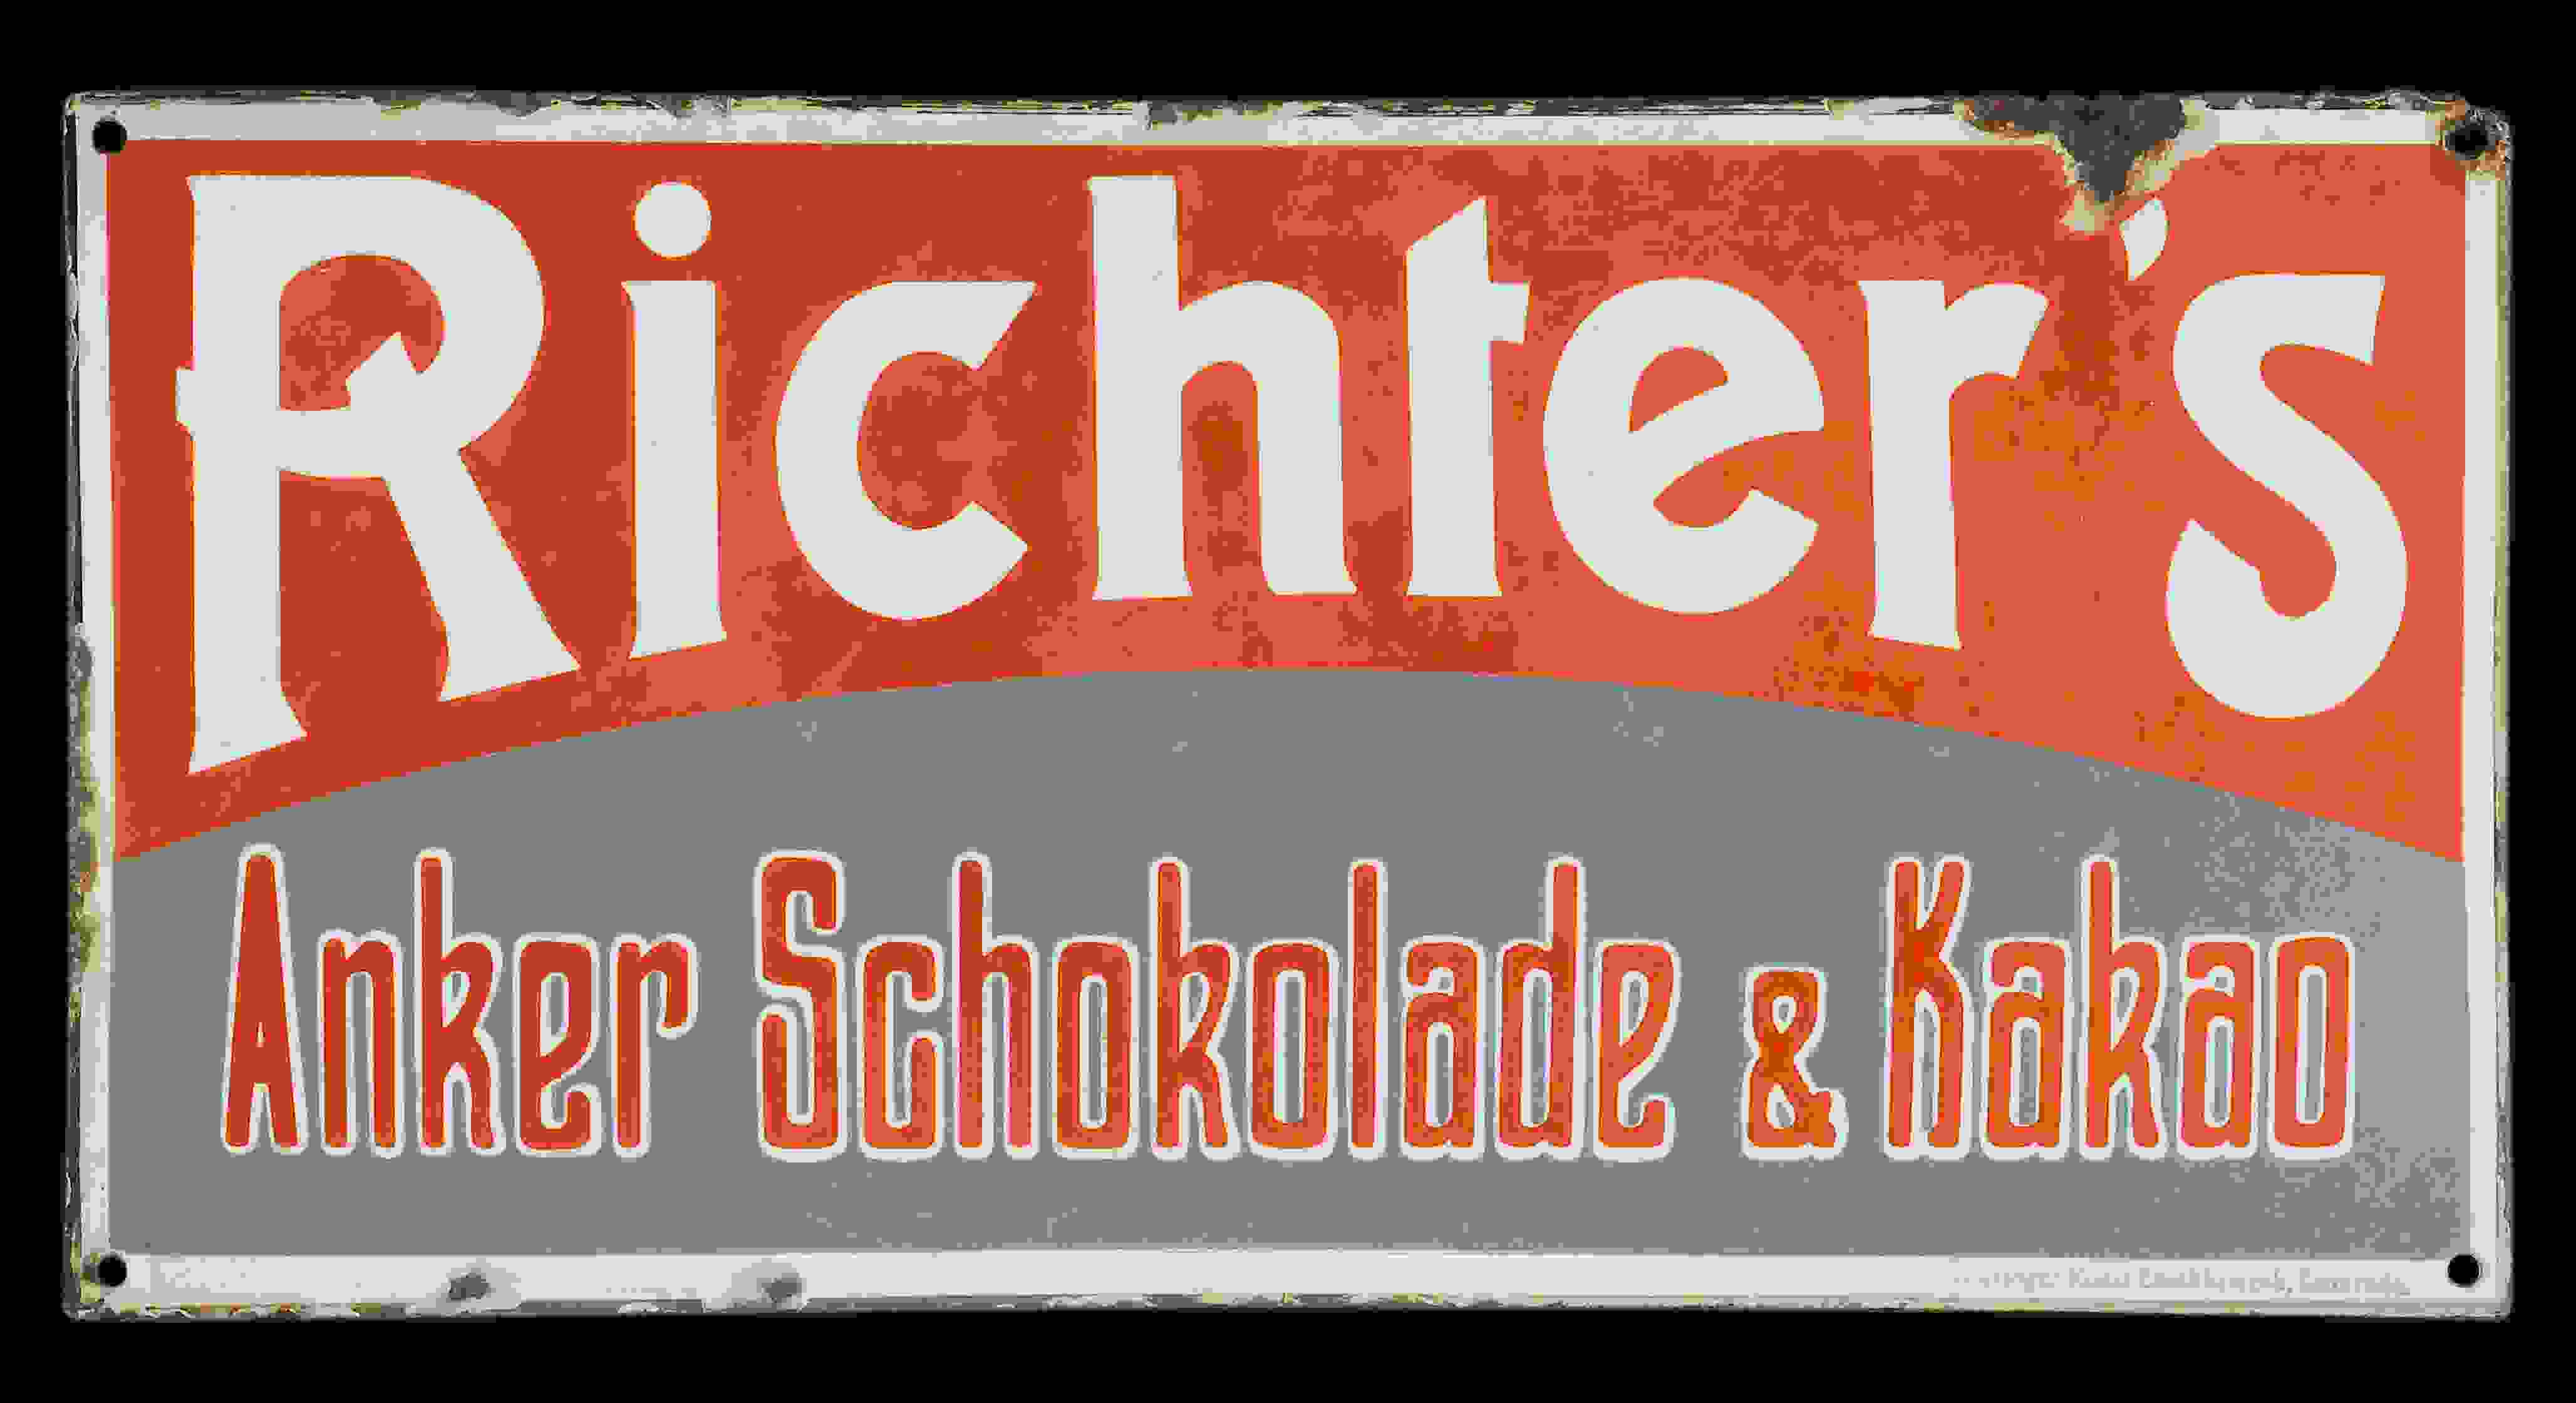 Richter's Anker Schokolade & Kakao 